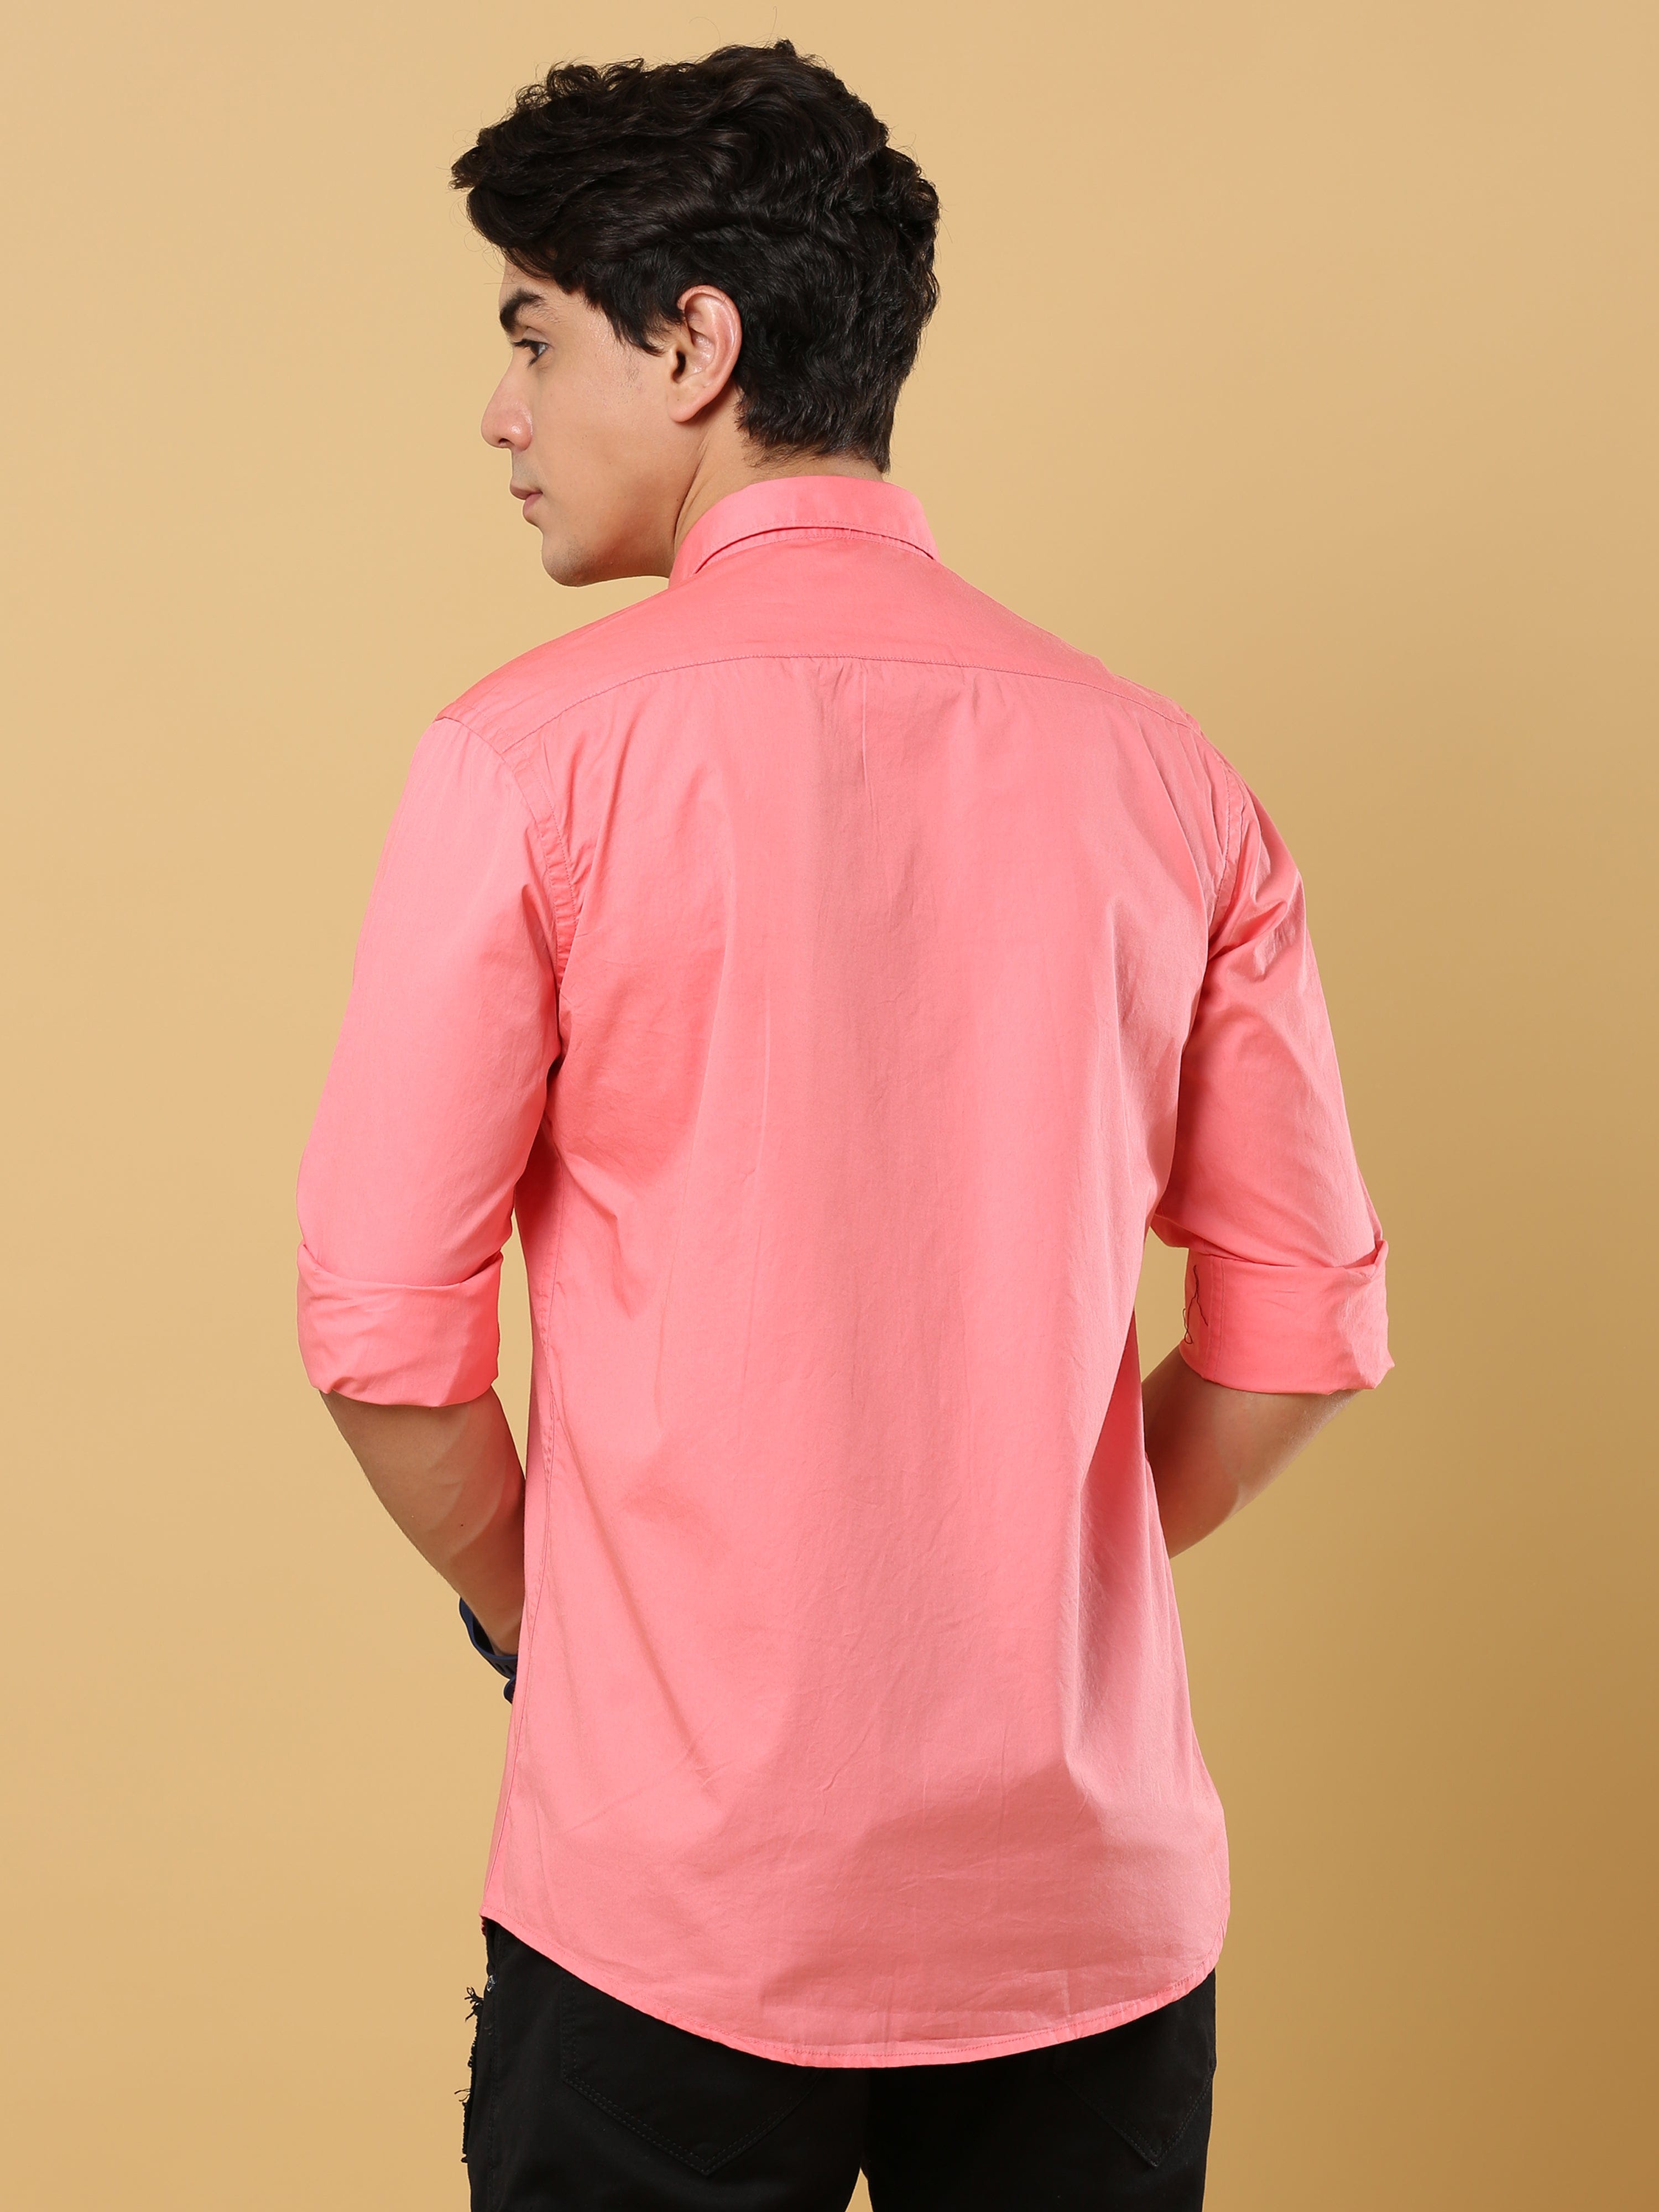 Peach Poplin Shirt | Peach Shirts For MenRs. 799.00